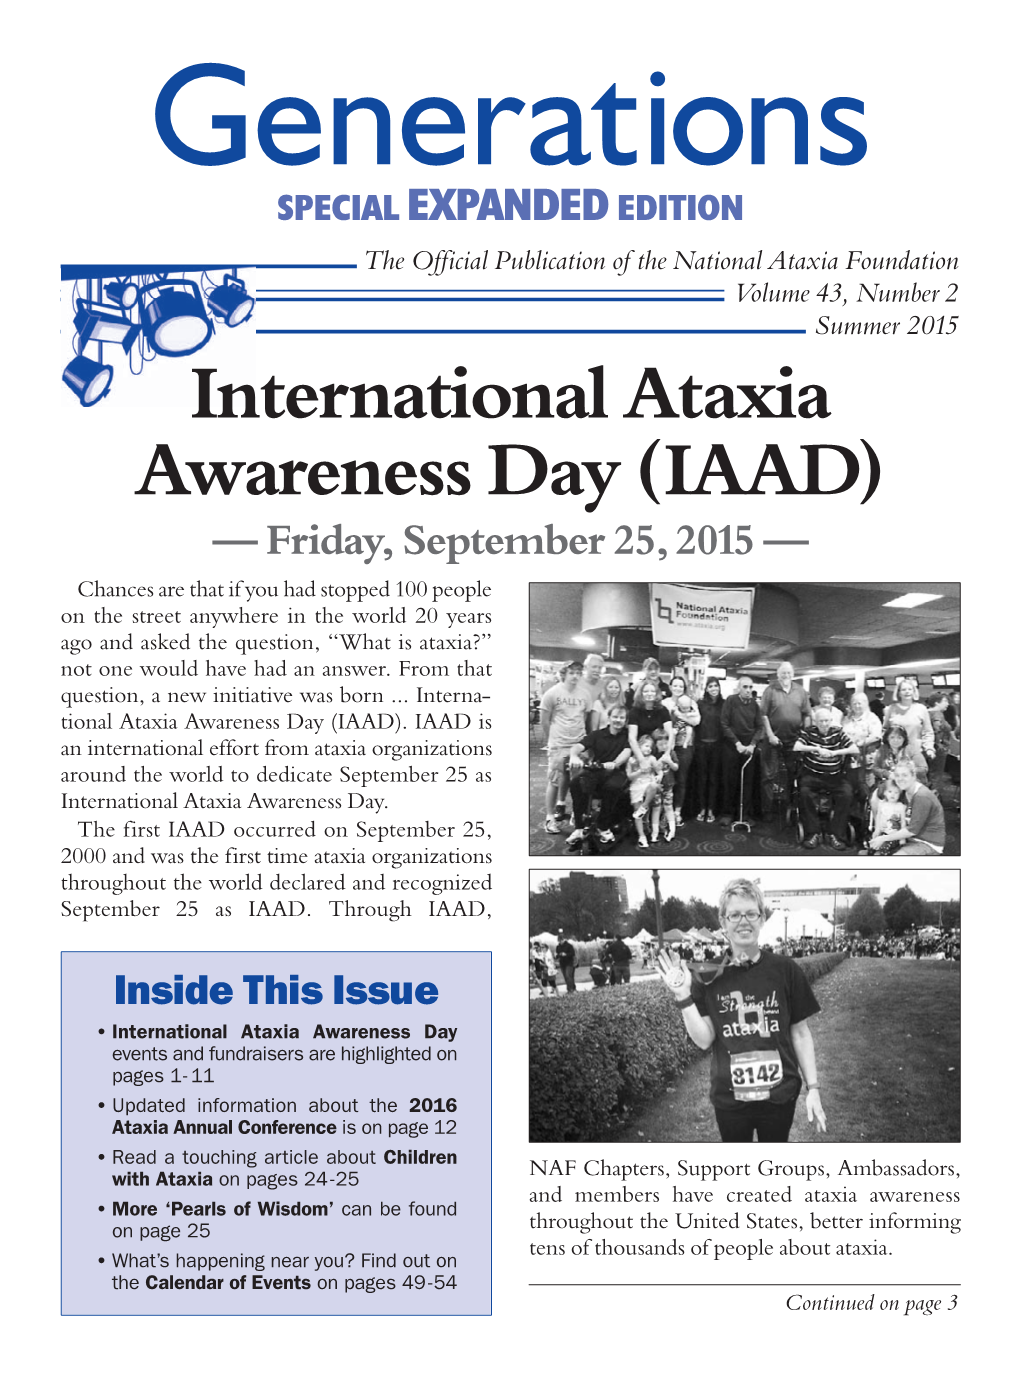 International Ataxia Awareness Day (IAAD)